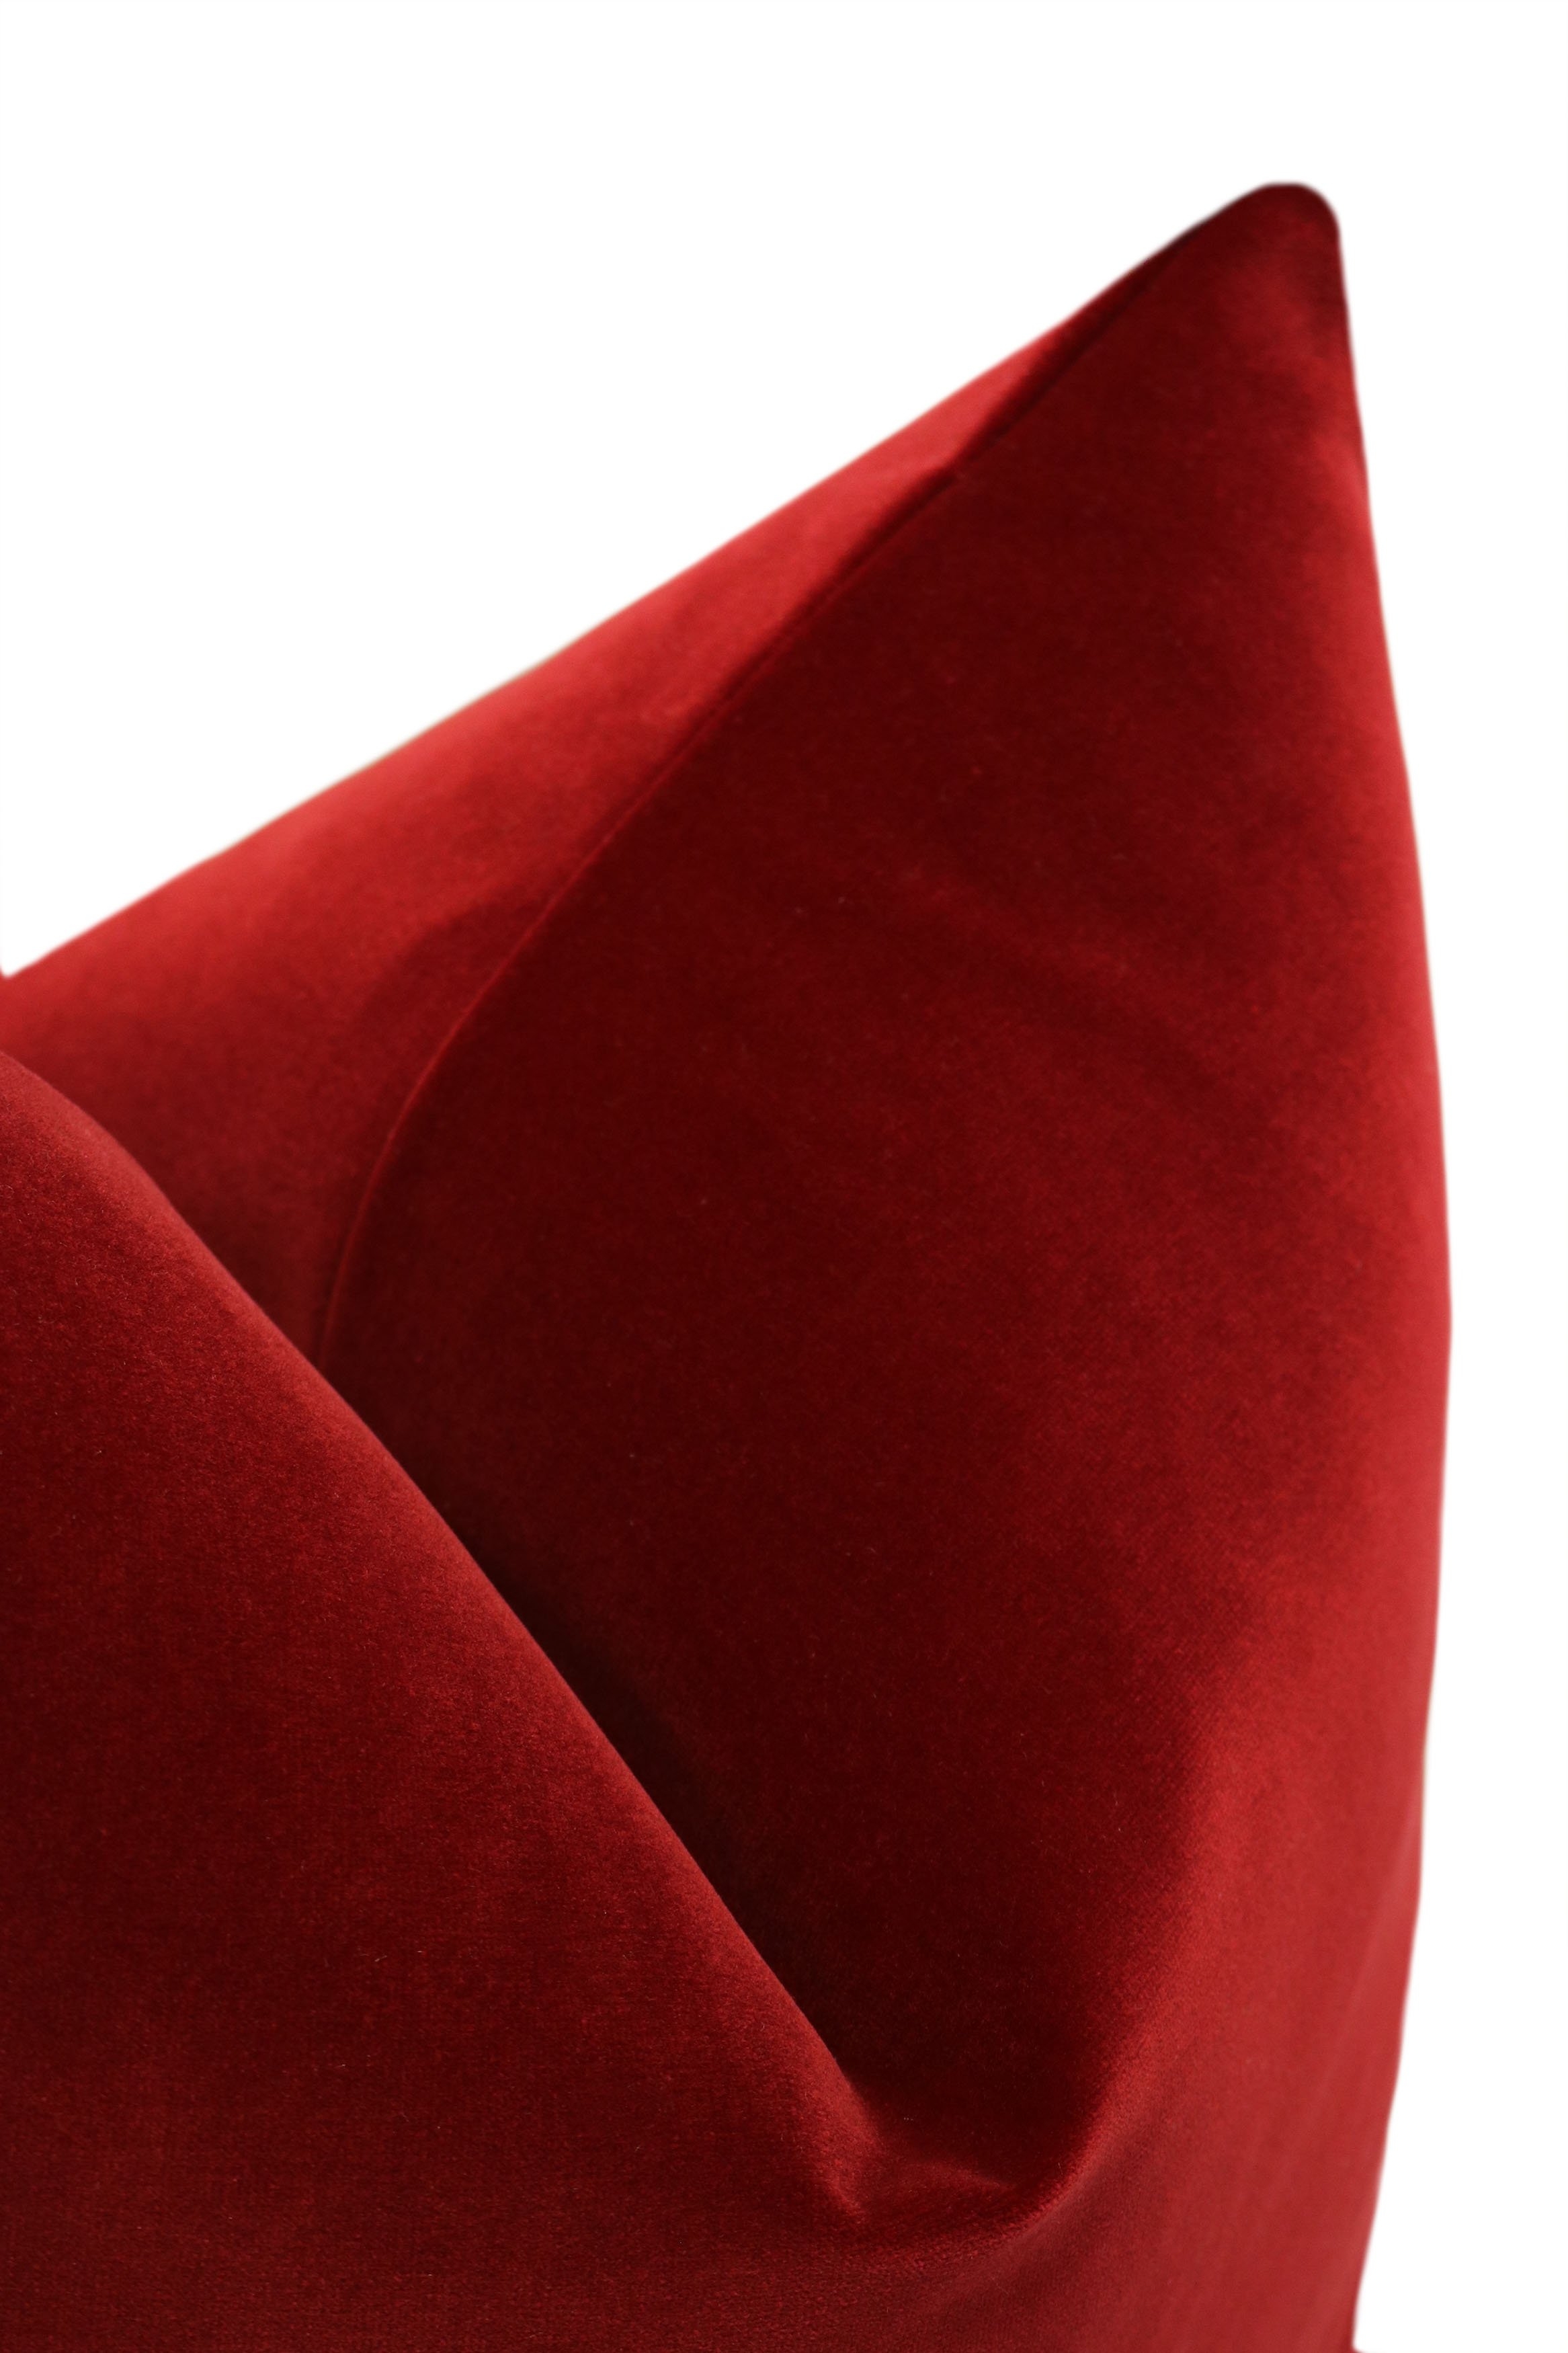 Signature Velvet // Crimson - 18" X 18" - Image 2